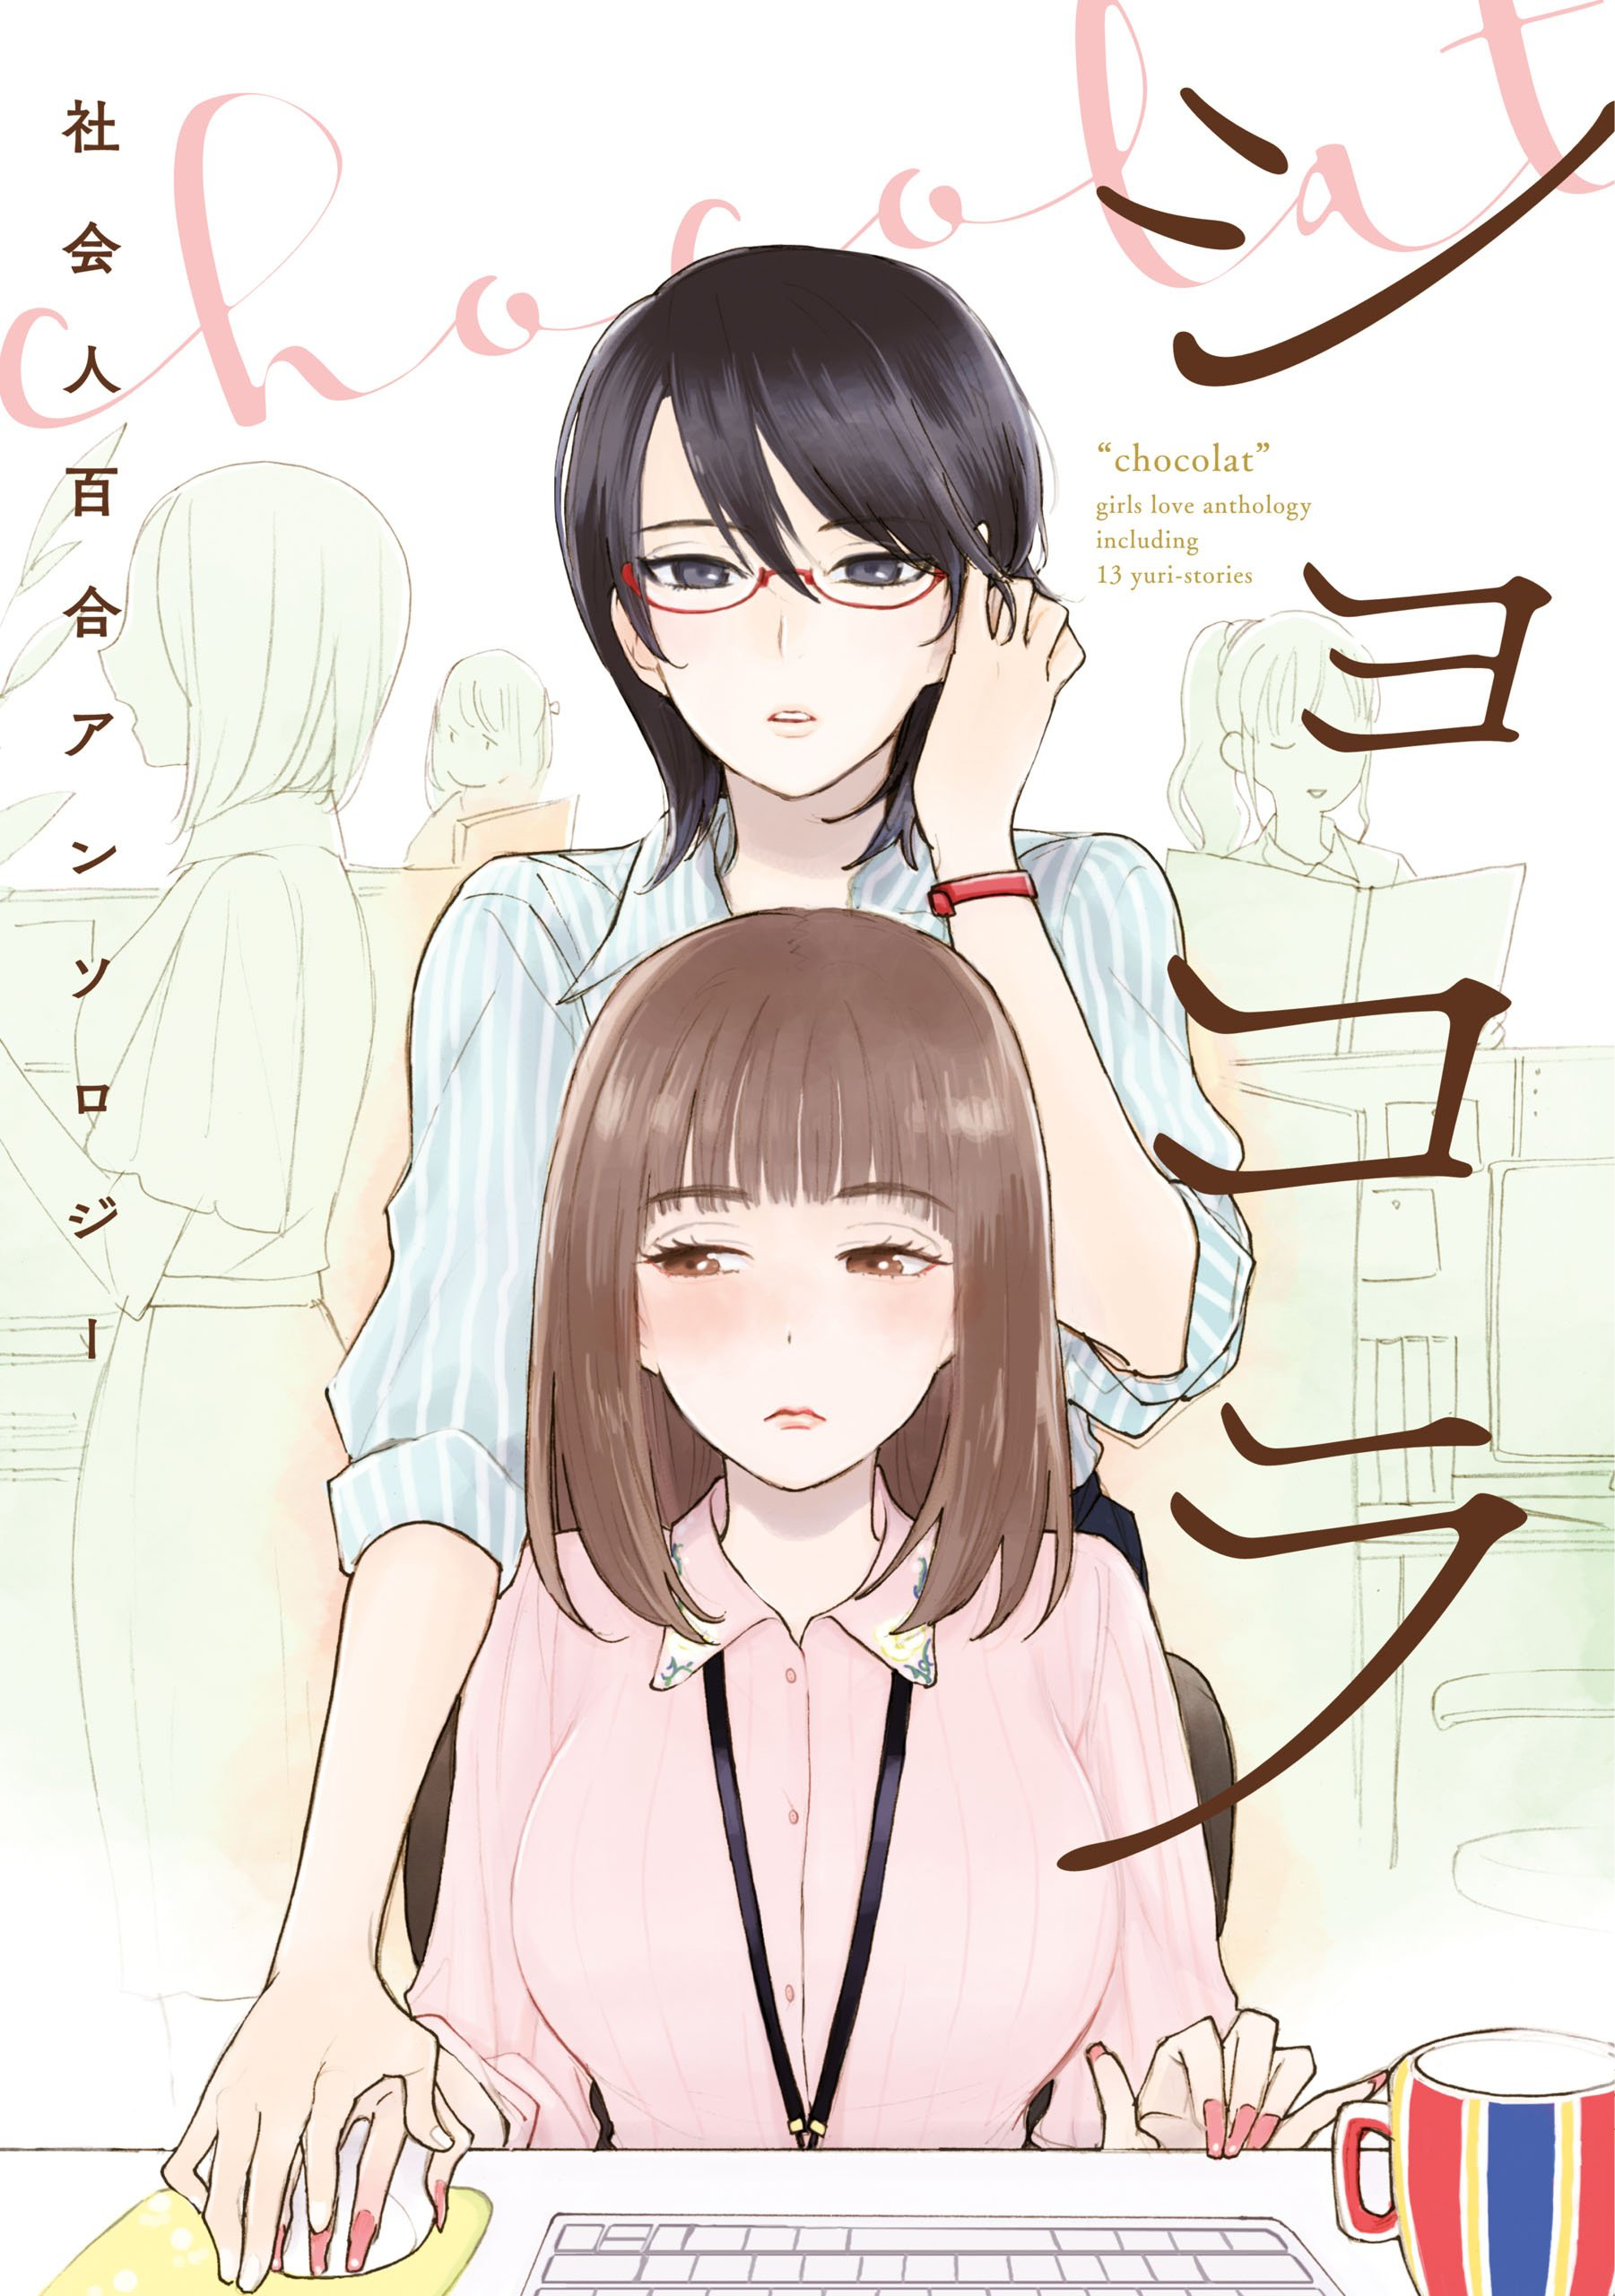 Read Chocolat Company Women Yuri Anthology - All Chapters  Manga Rock dedans Chocolat Manga